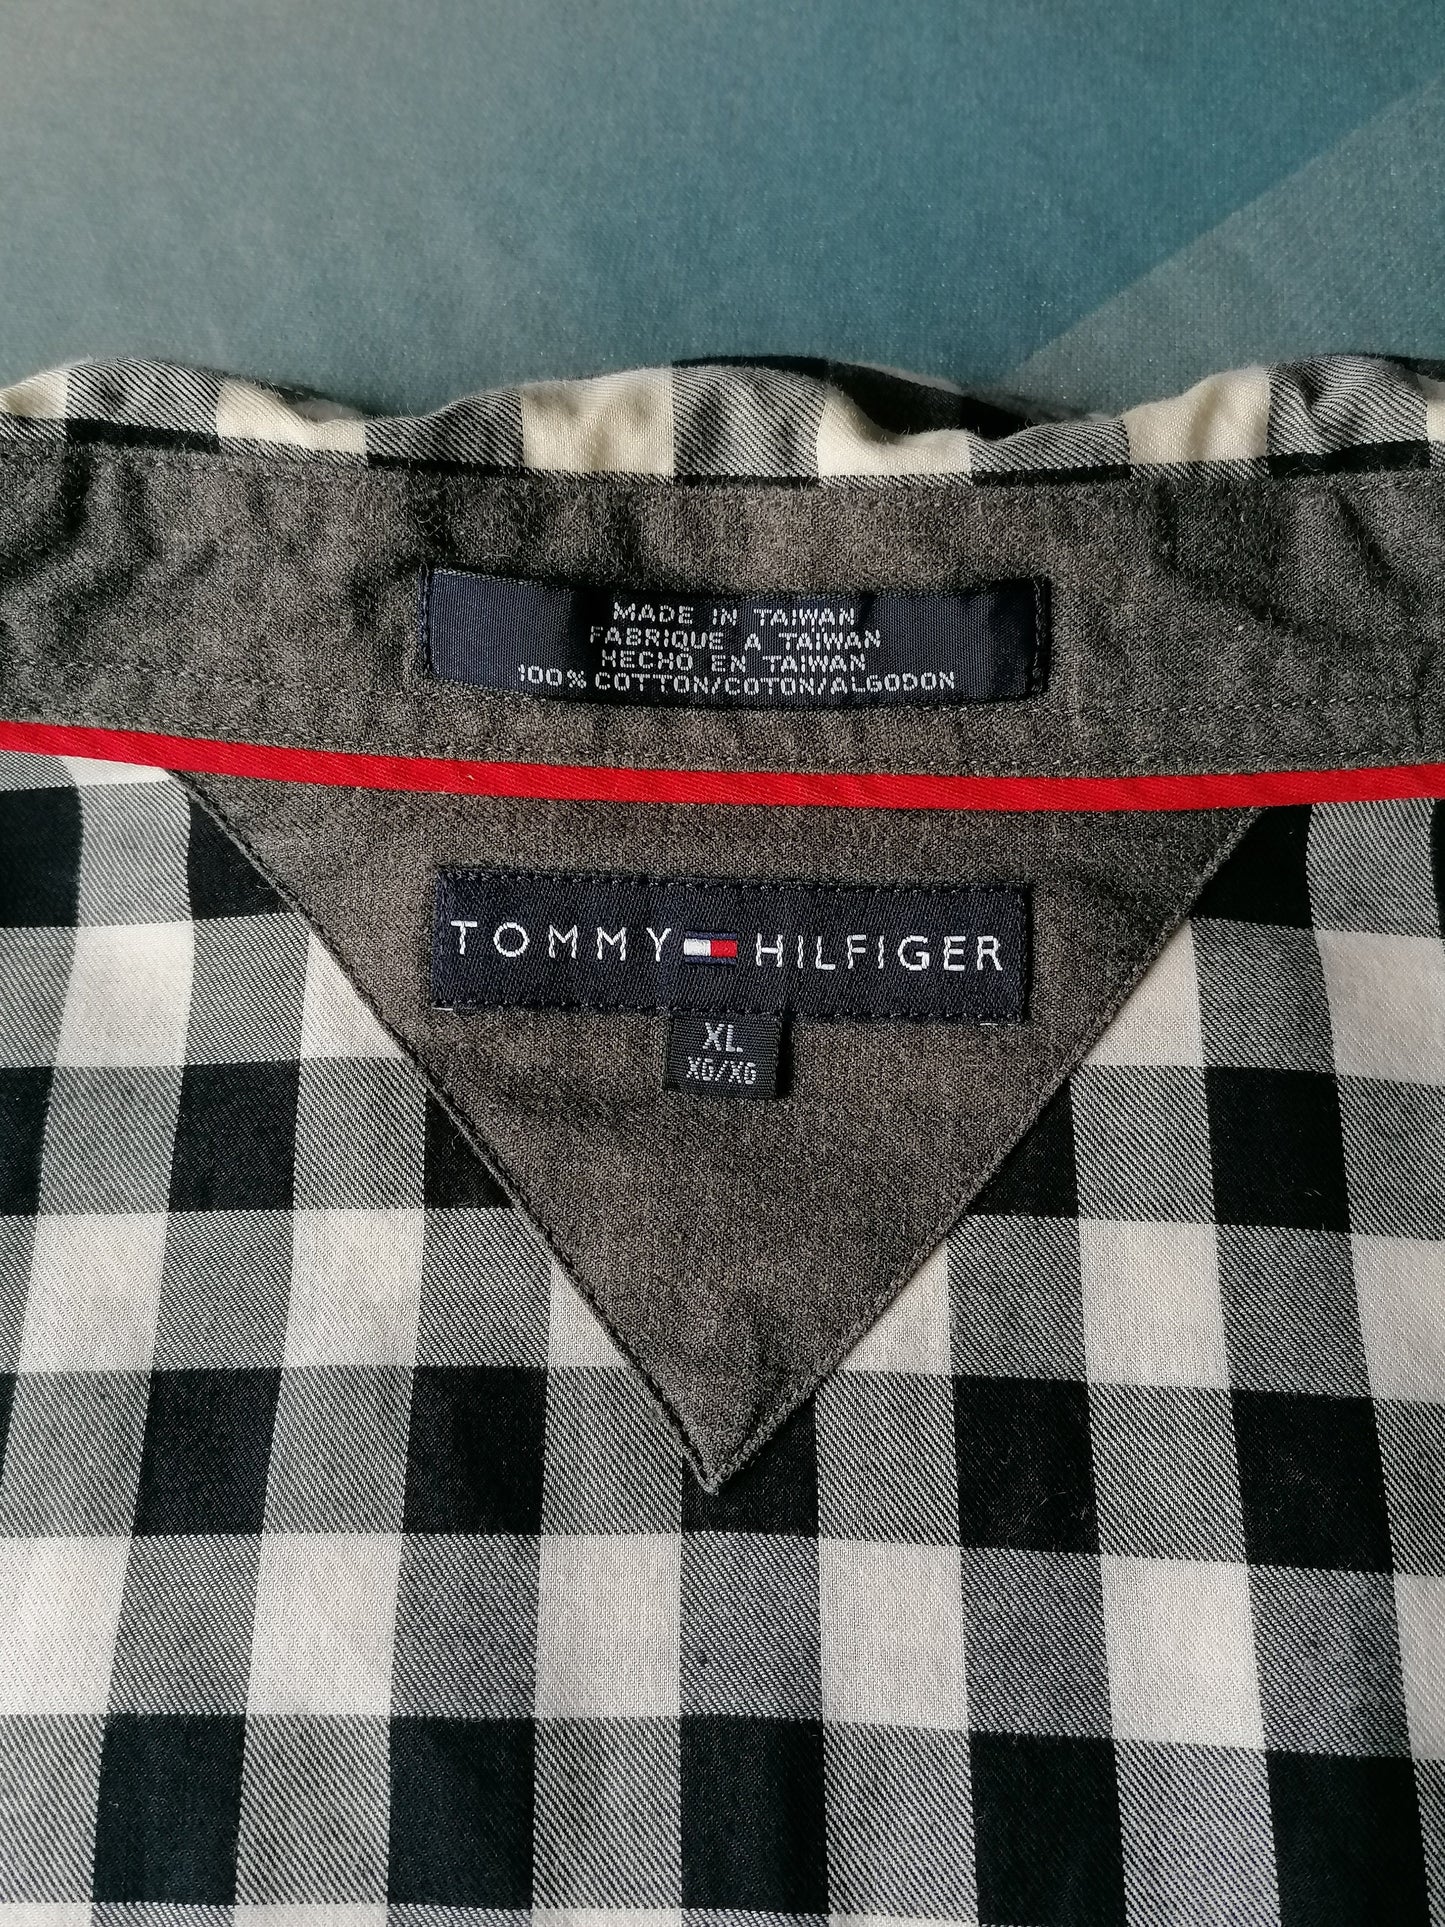 Tommy Hilfiger Shirt avec des poteaux de presse. Blanc Blanc Damier. Taille xl.